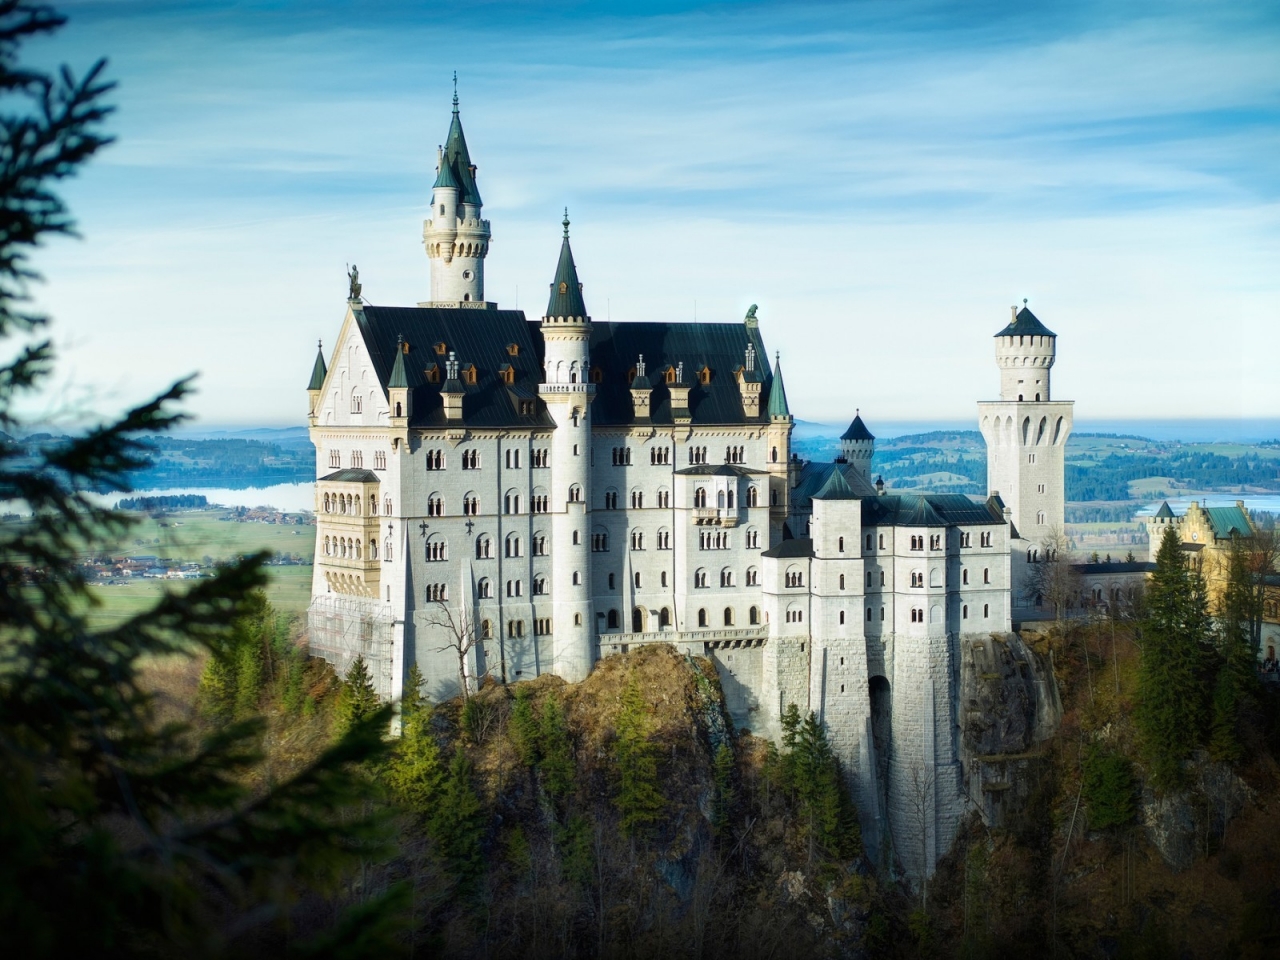 Bavaria Neuschwanstein Castle for 1280 x 960 resolution